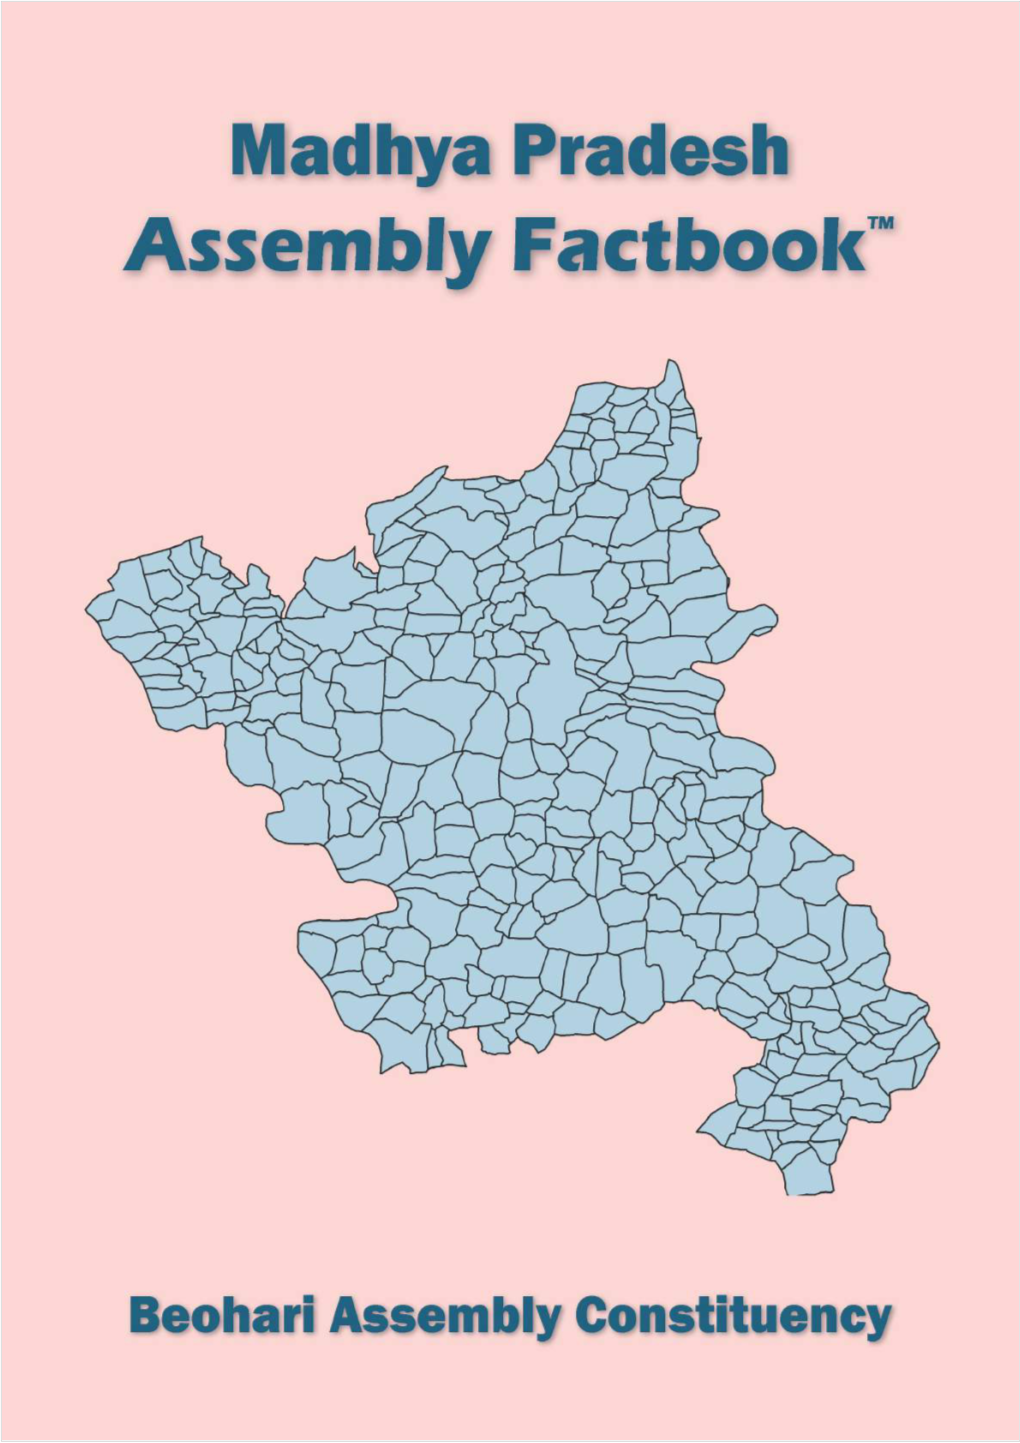 Beohari Assembly Madhya Pradesh Factbook